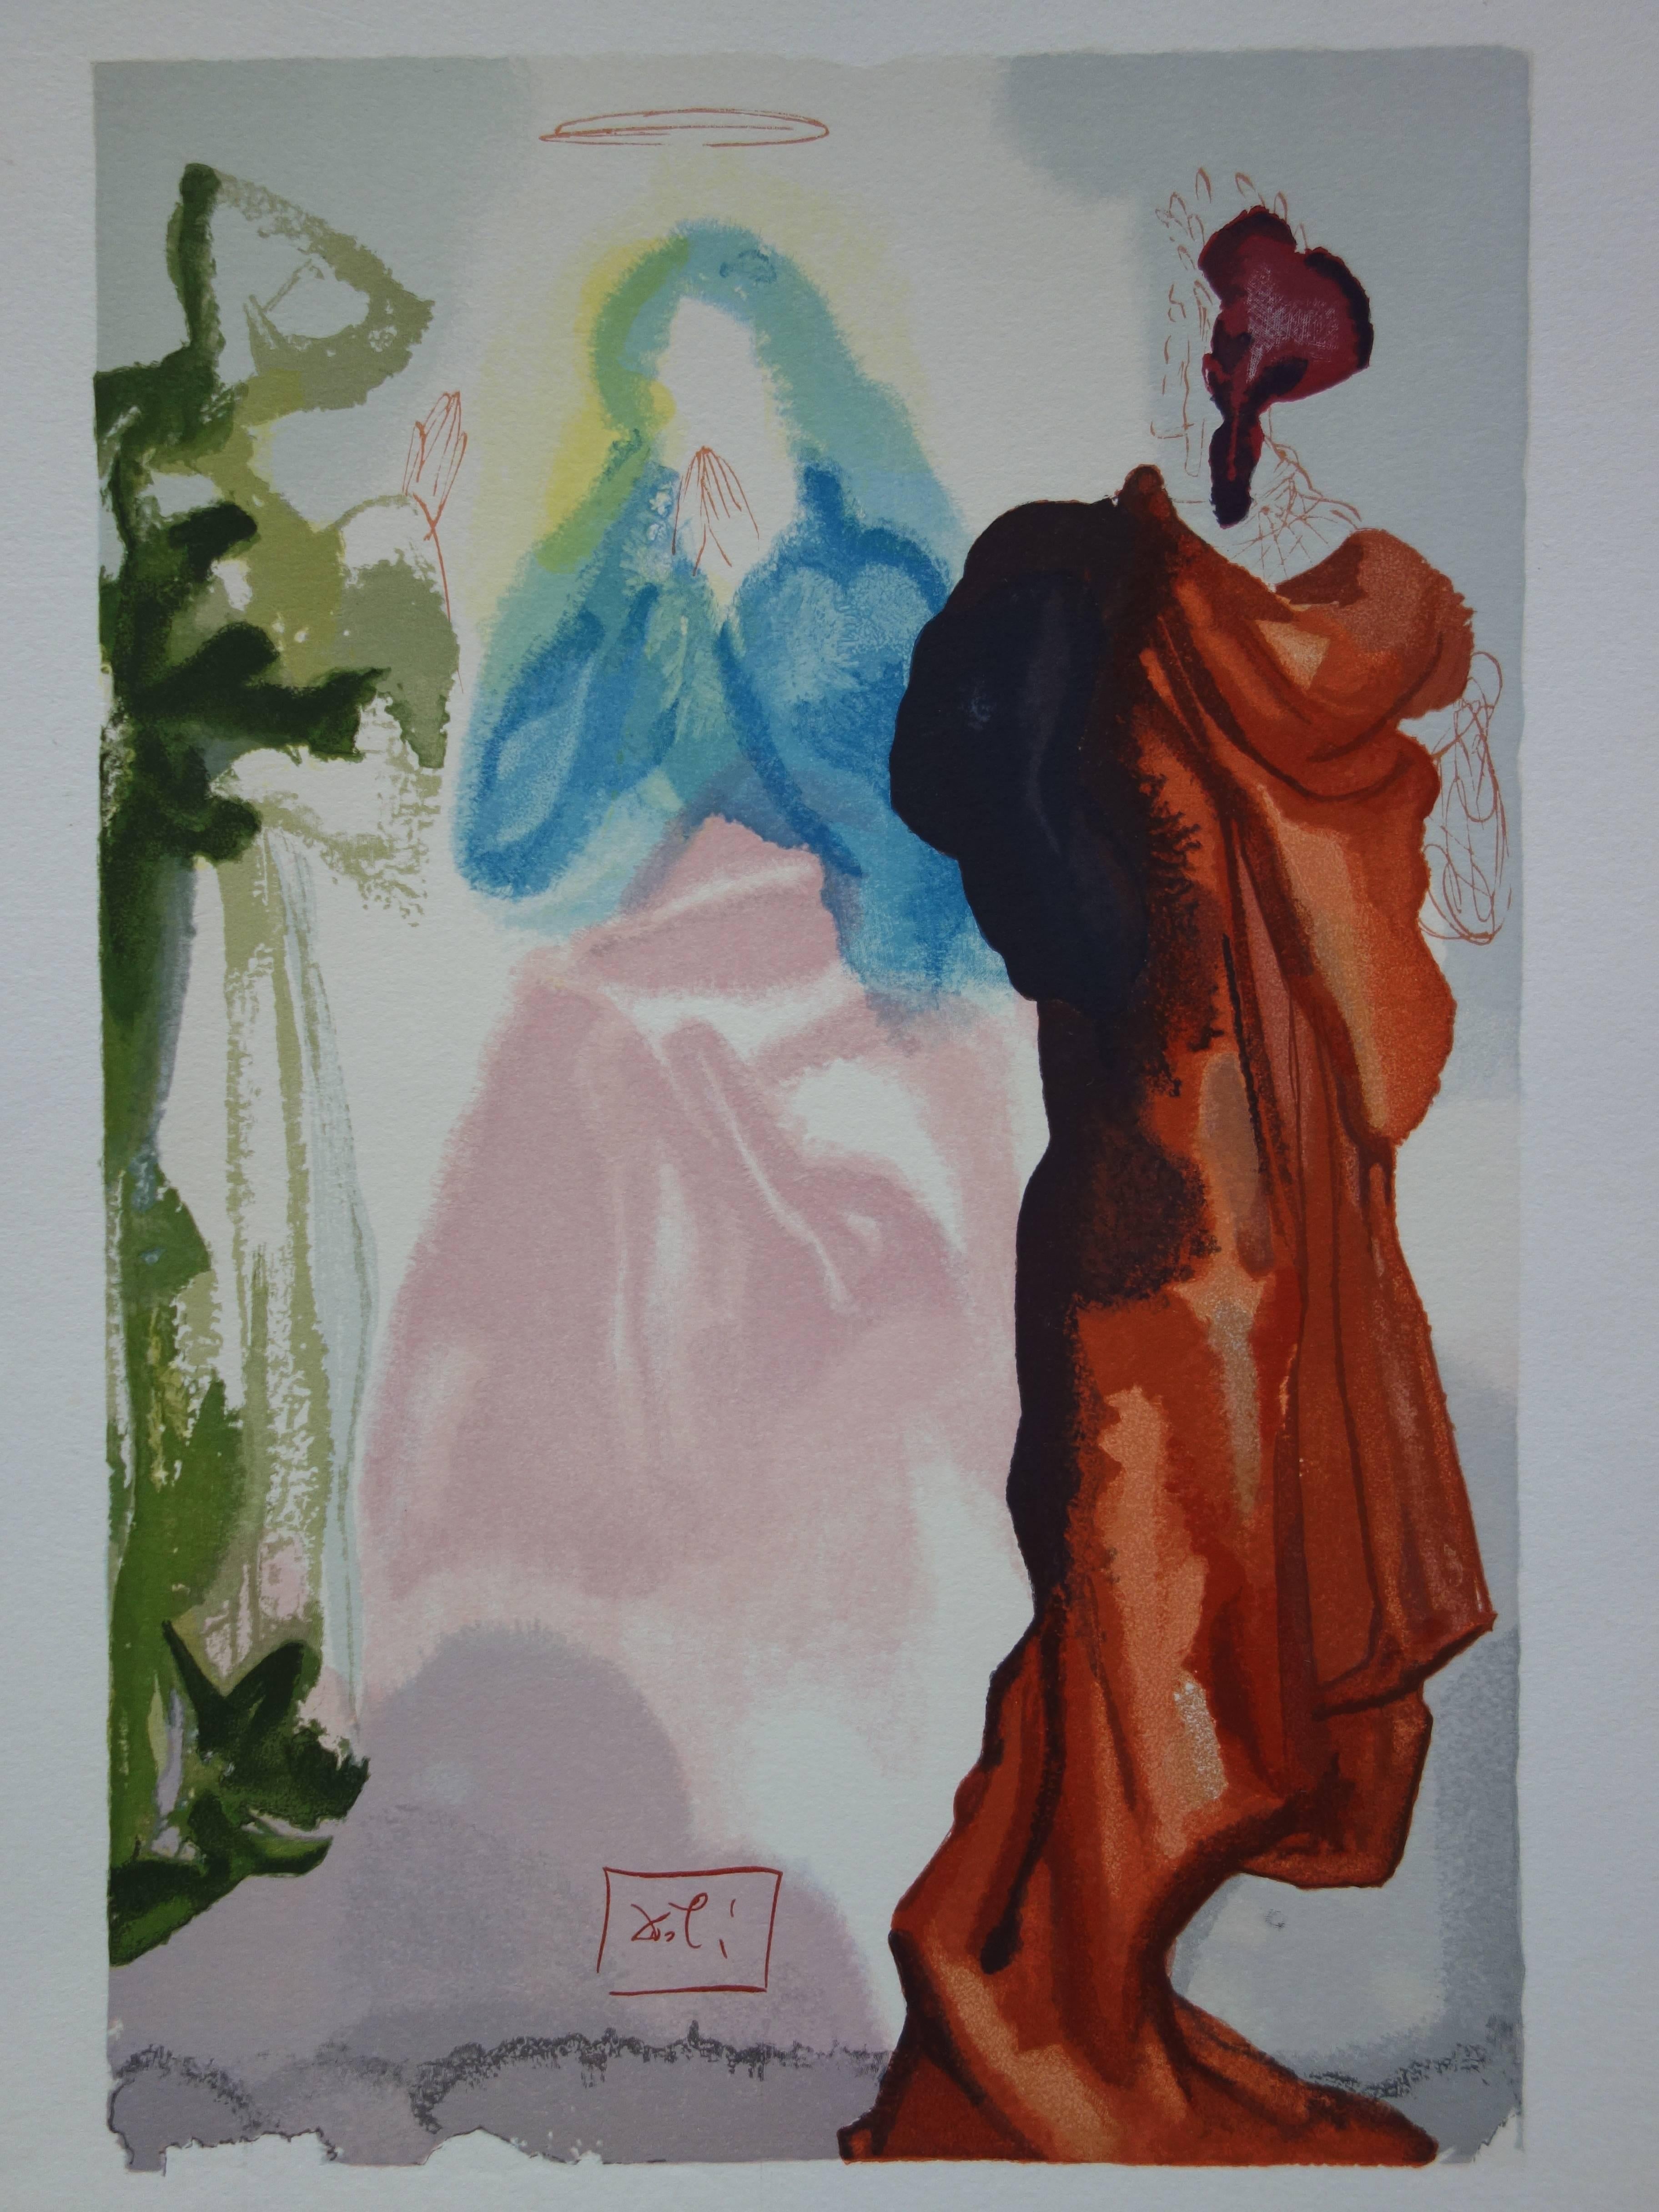 Salvador Dali (1904-1989)
Ciel 33 - Prière de saint Bernard

Gravure sur bois en couleur
avec la signature imprimée dans la plaque
1960/63
Imprimé sur papier Vélin BFK Rives
Taille 32,8 x 26,4 cm (c. 13 x 10 in)

RÉFÉRENCES : Champ p. 189 à 200 /